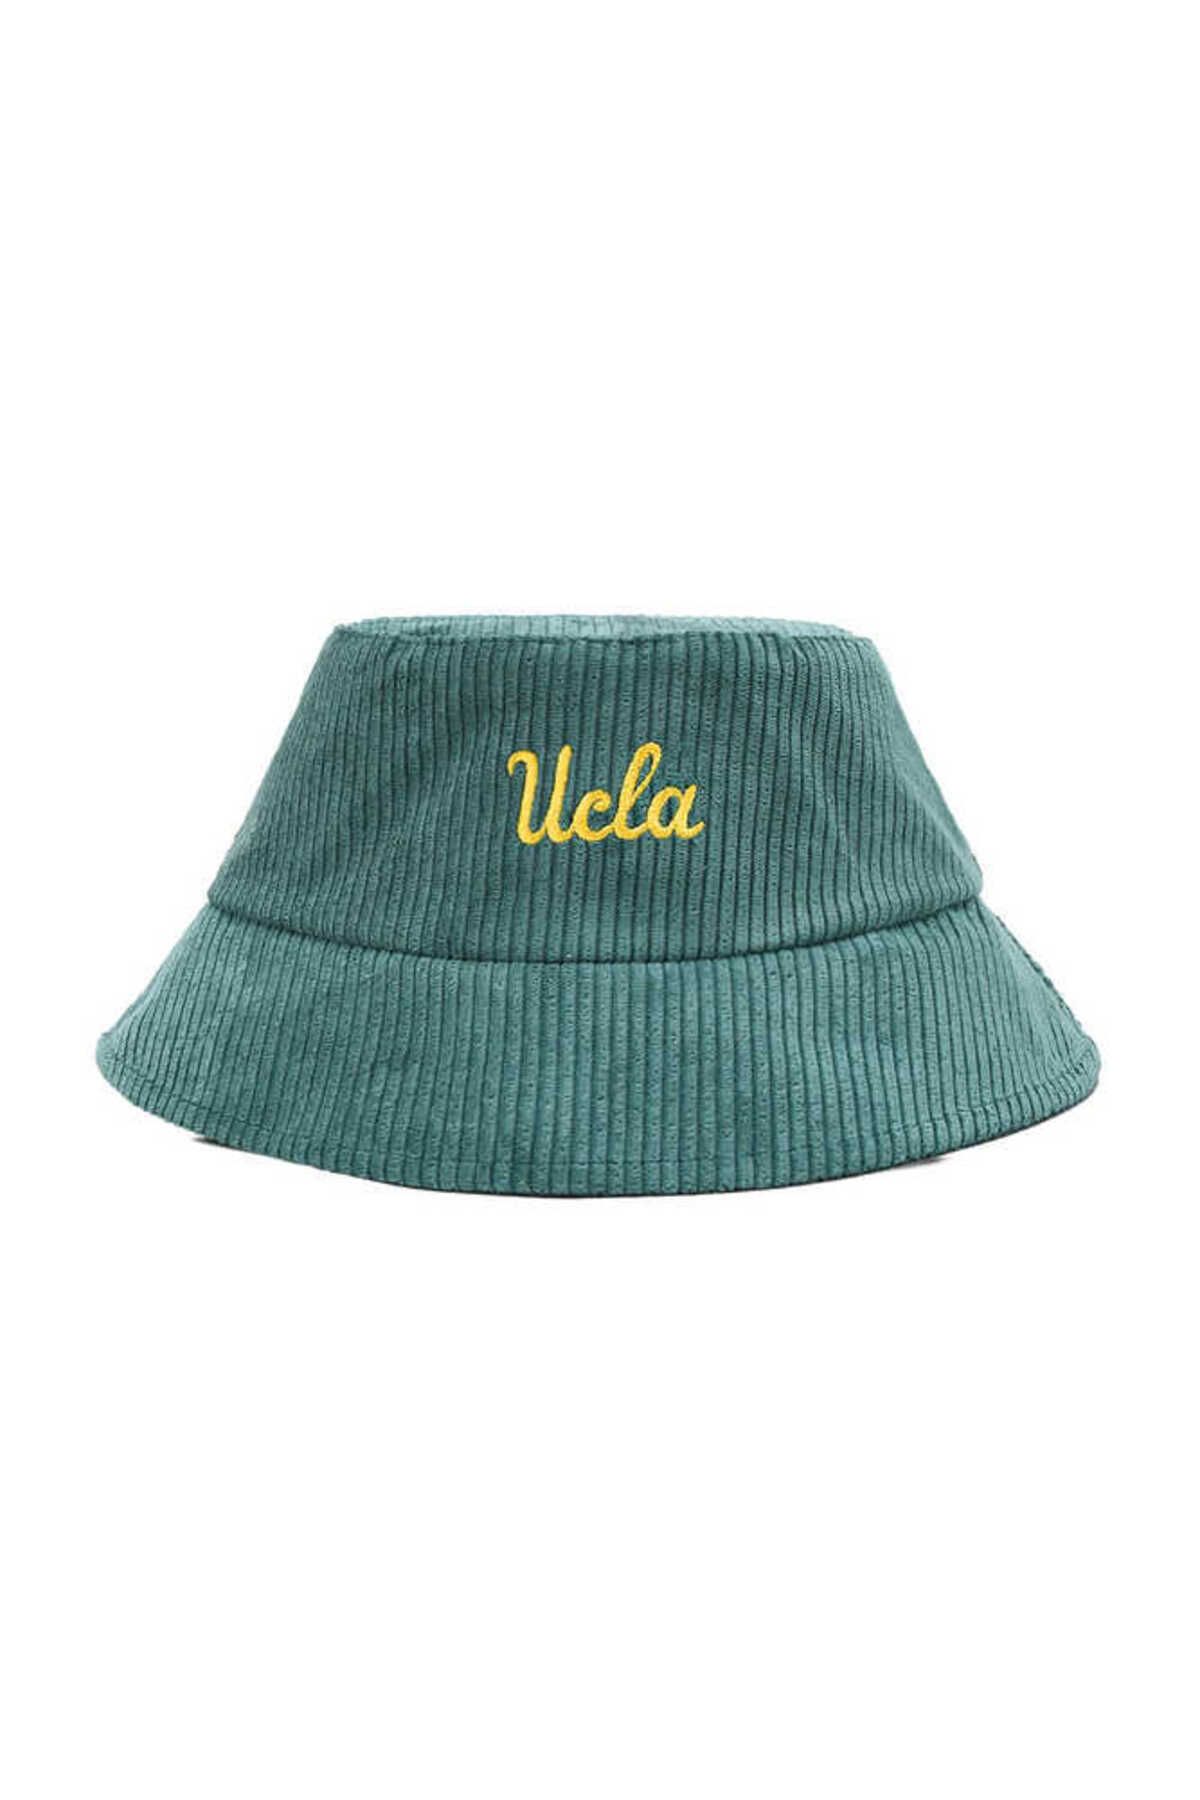 Ucla Carrıe Yeşil Bucket-kadife Nakışlı Unisex Şapka